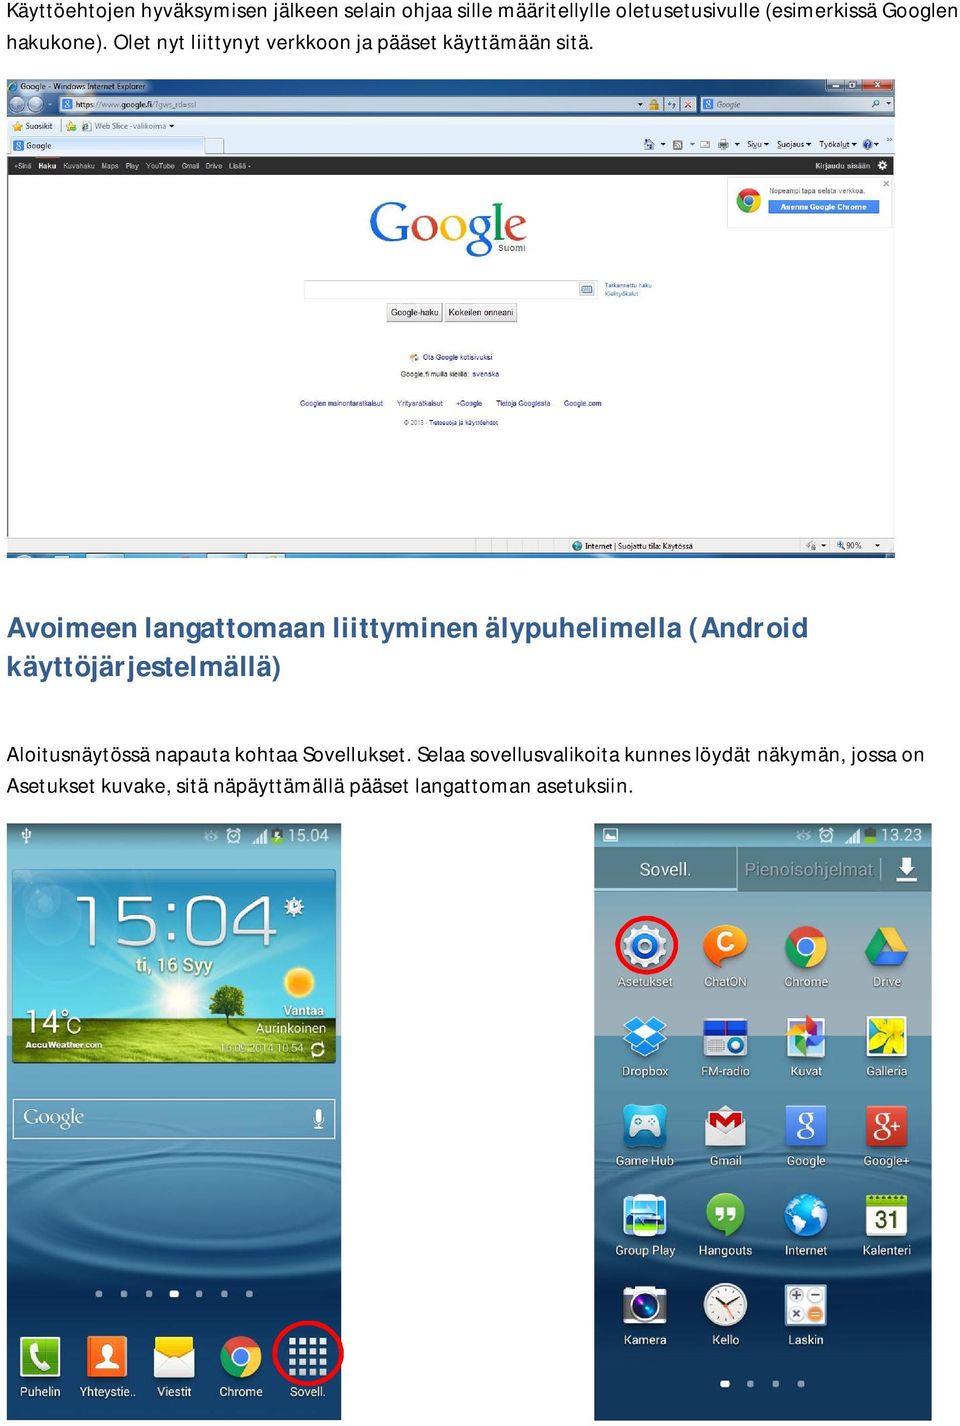 Avoimeenlangattomaanliittyminenälypuhelimella(Android käyttöjärjestelmällä) Aloitusnäytössä napauta